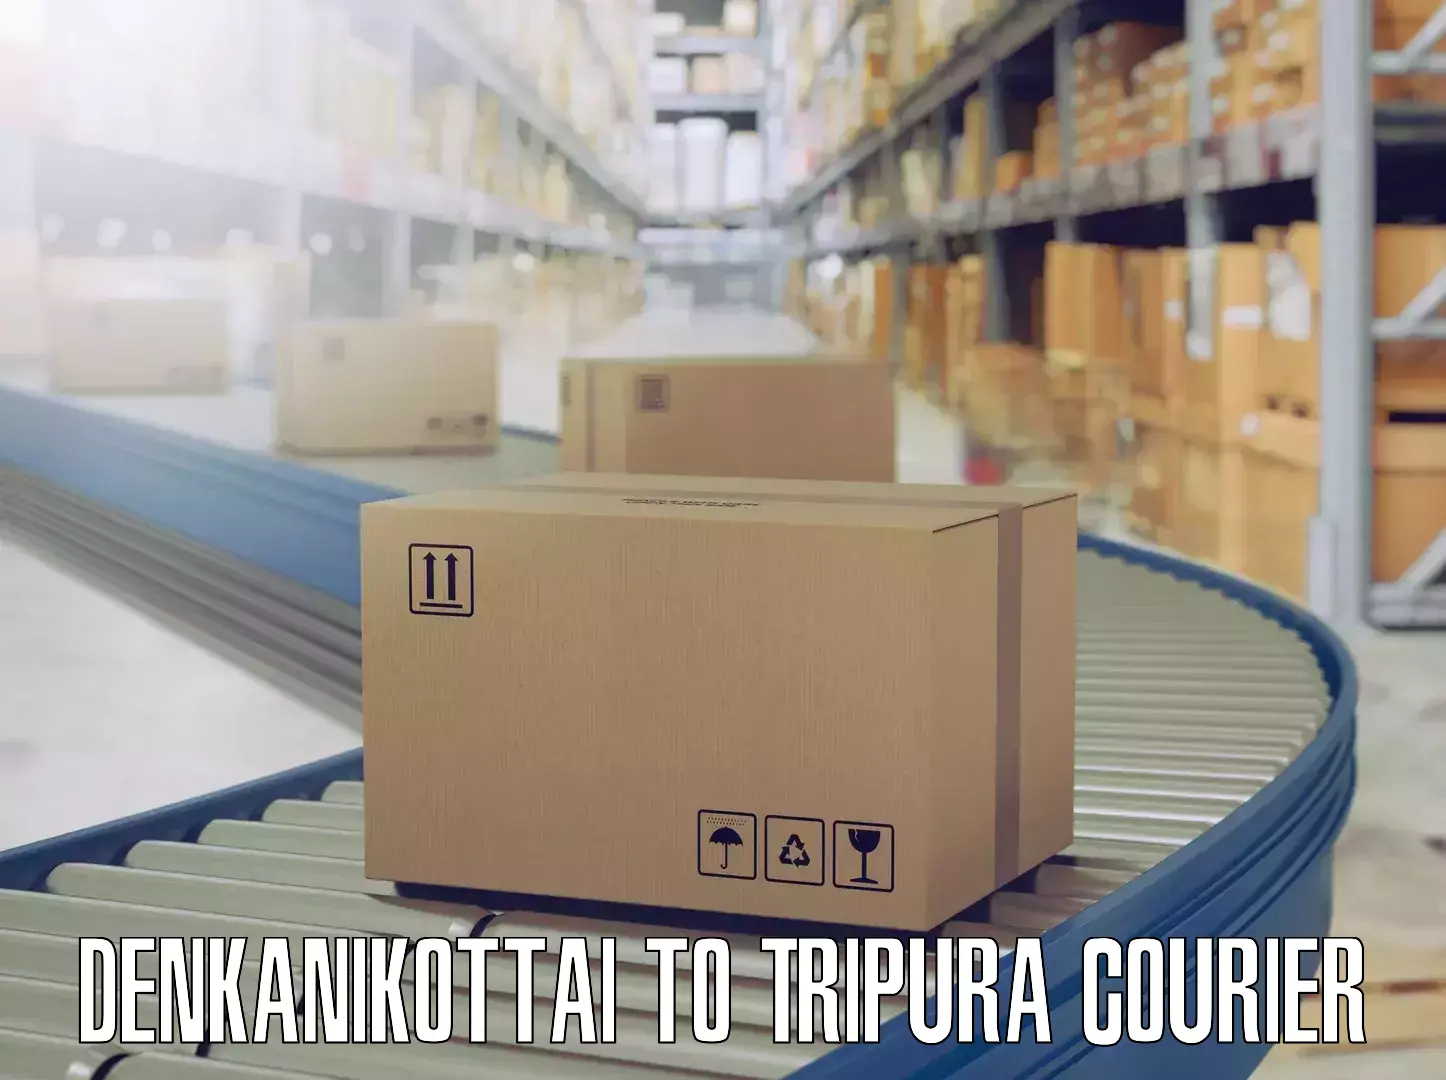 Professional packing services Denkanikottai to Aambasa